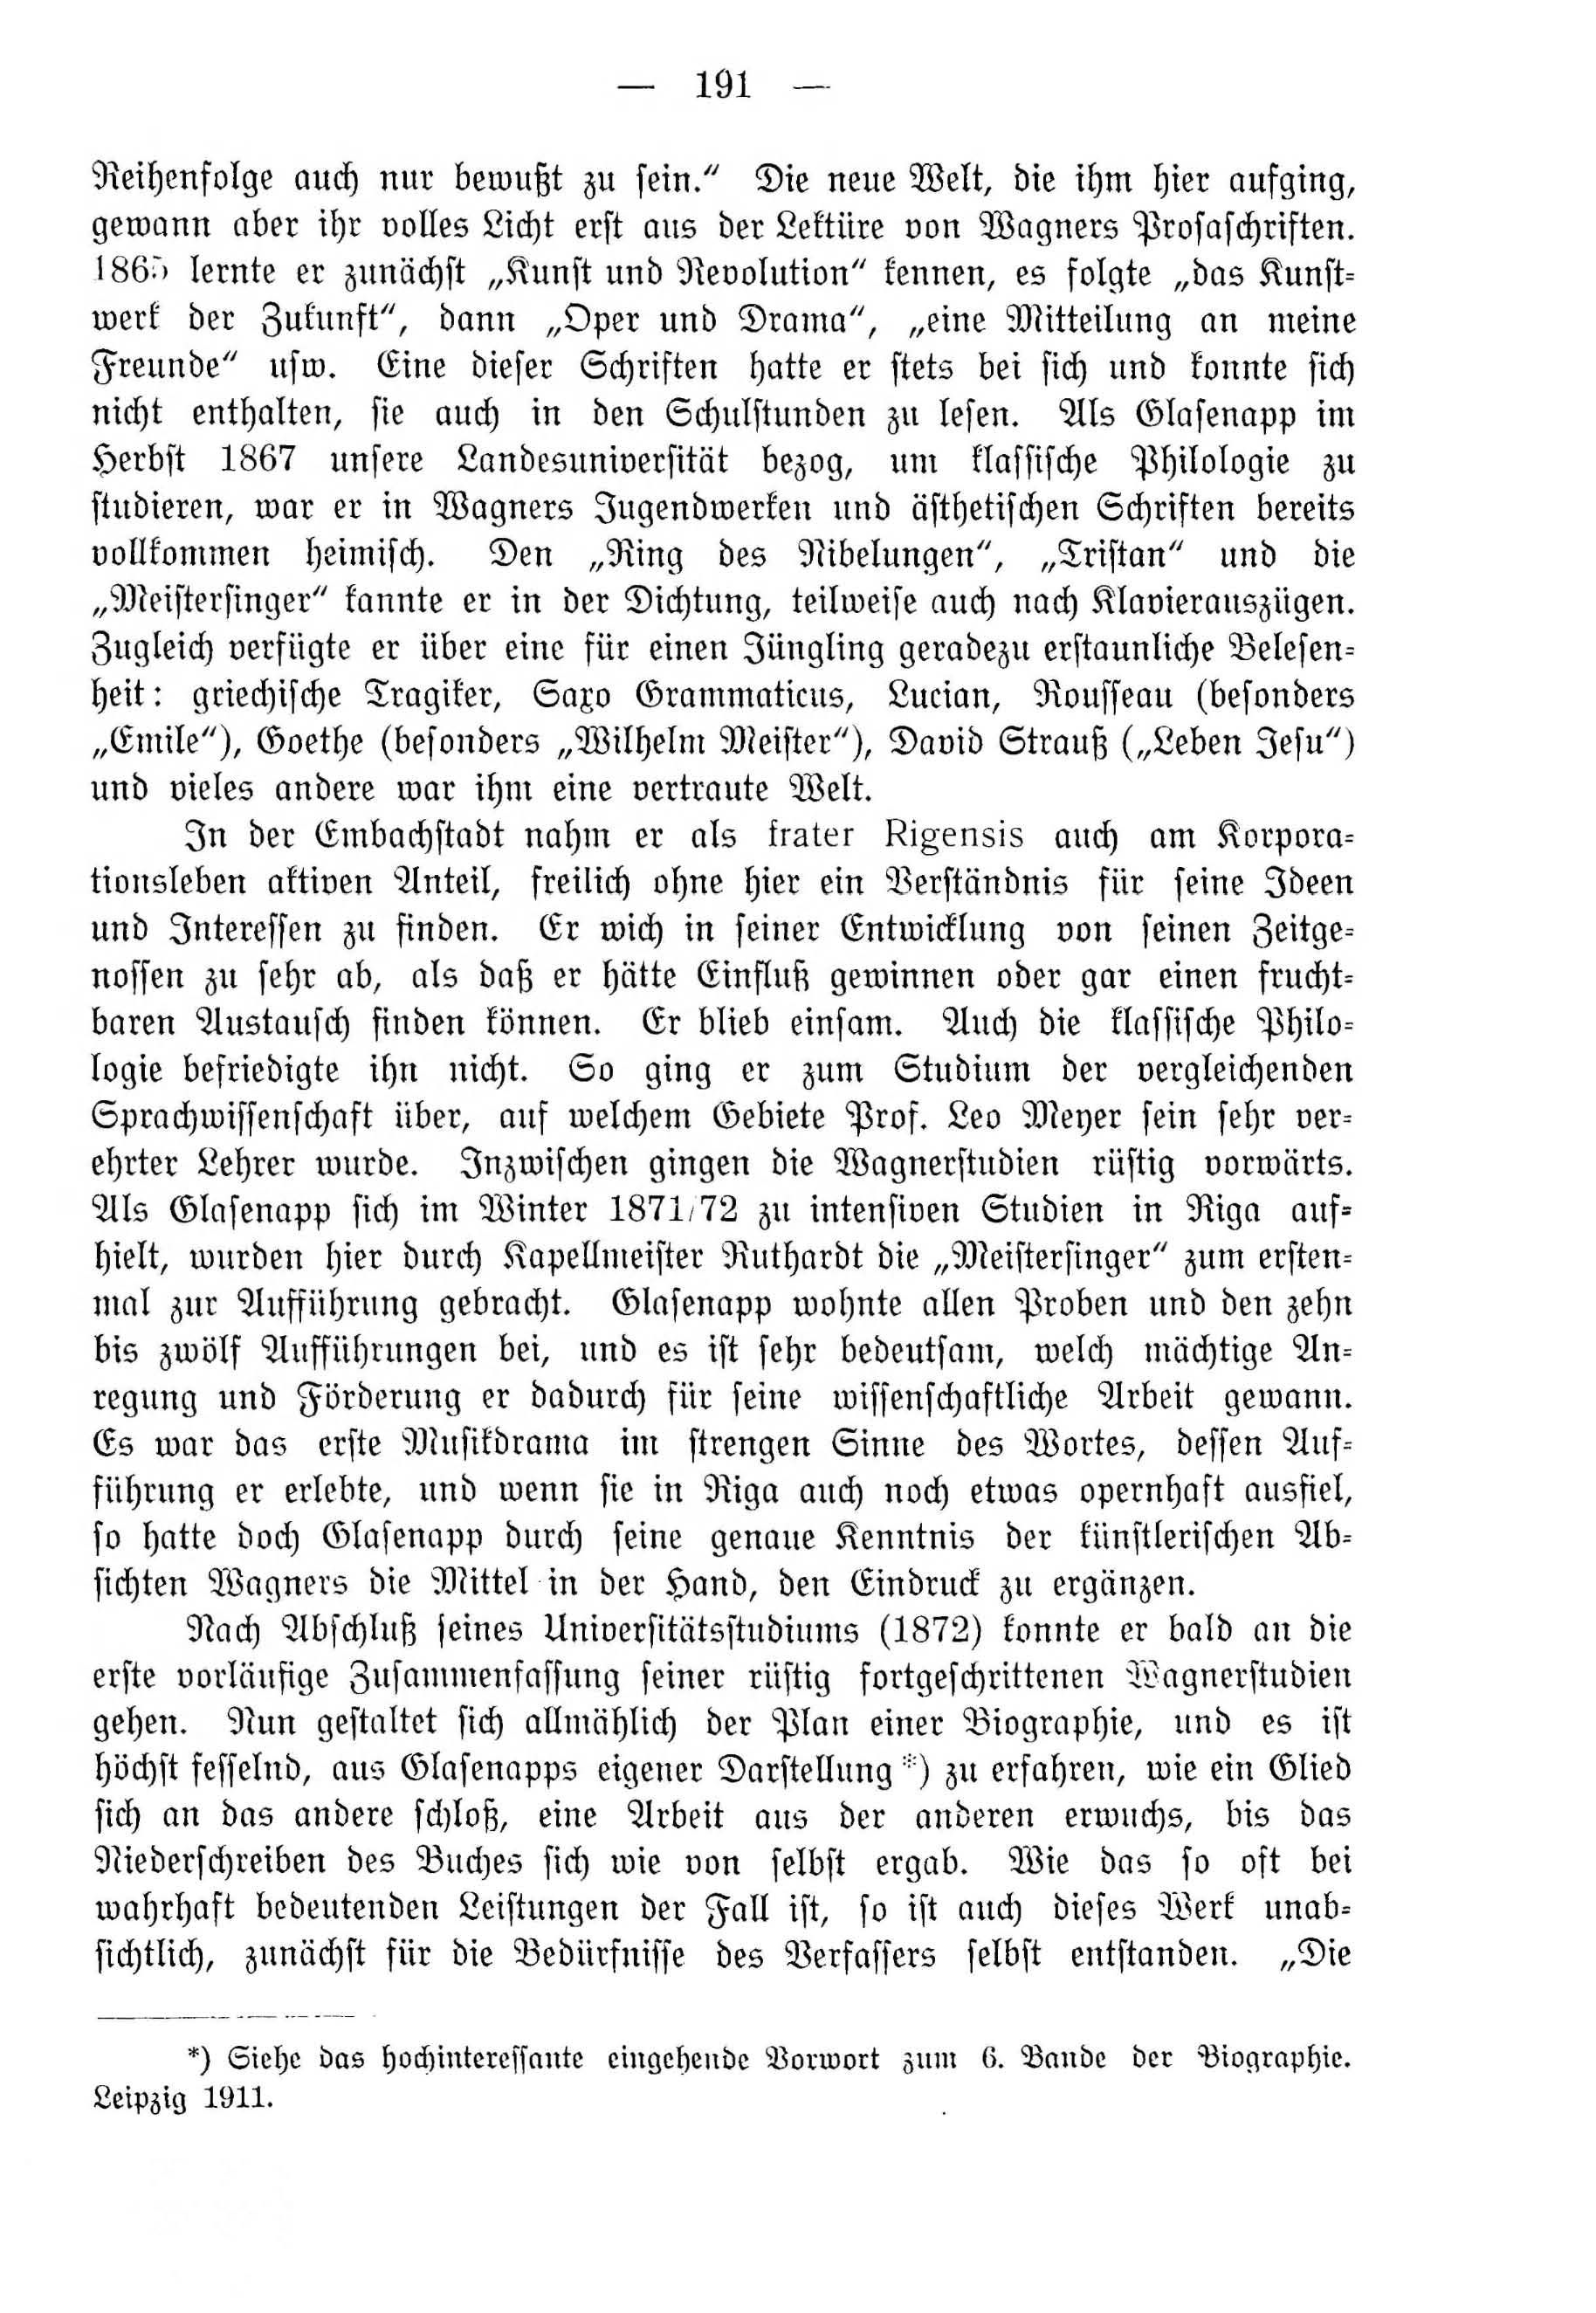 Deutsche Monatsschrift für Russland [4] (1915) | 191. (191) Main body of text